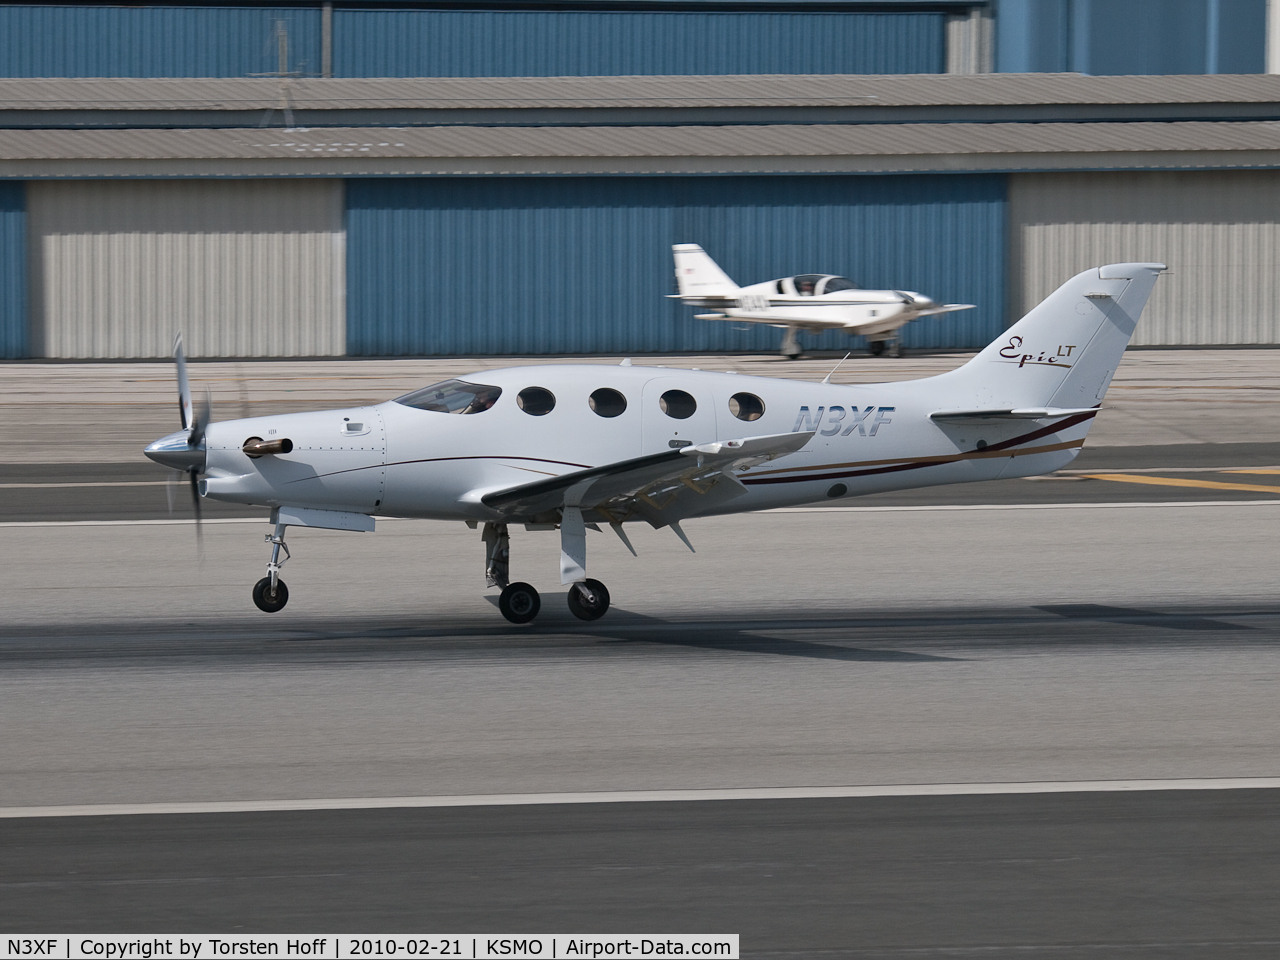 N3XF, 2006 AIR Epic LT C/N 004, N3XF arriving on RWY 21